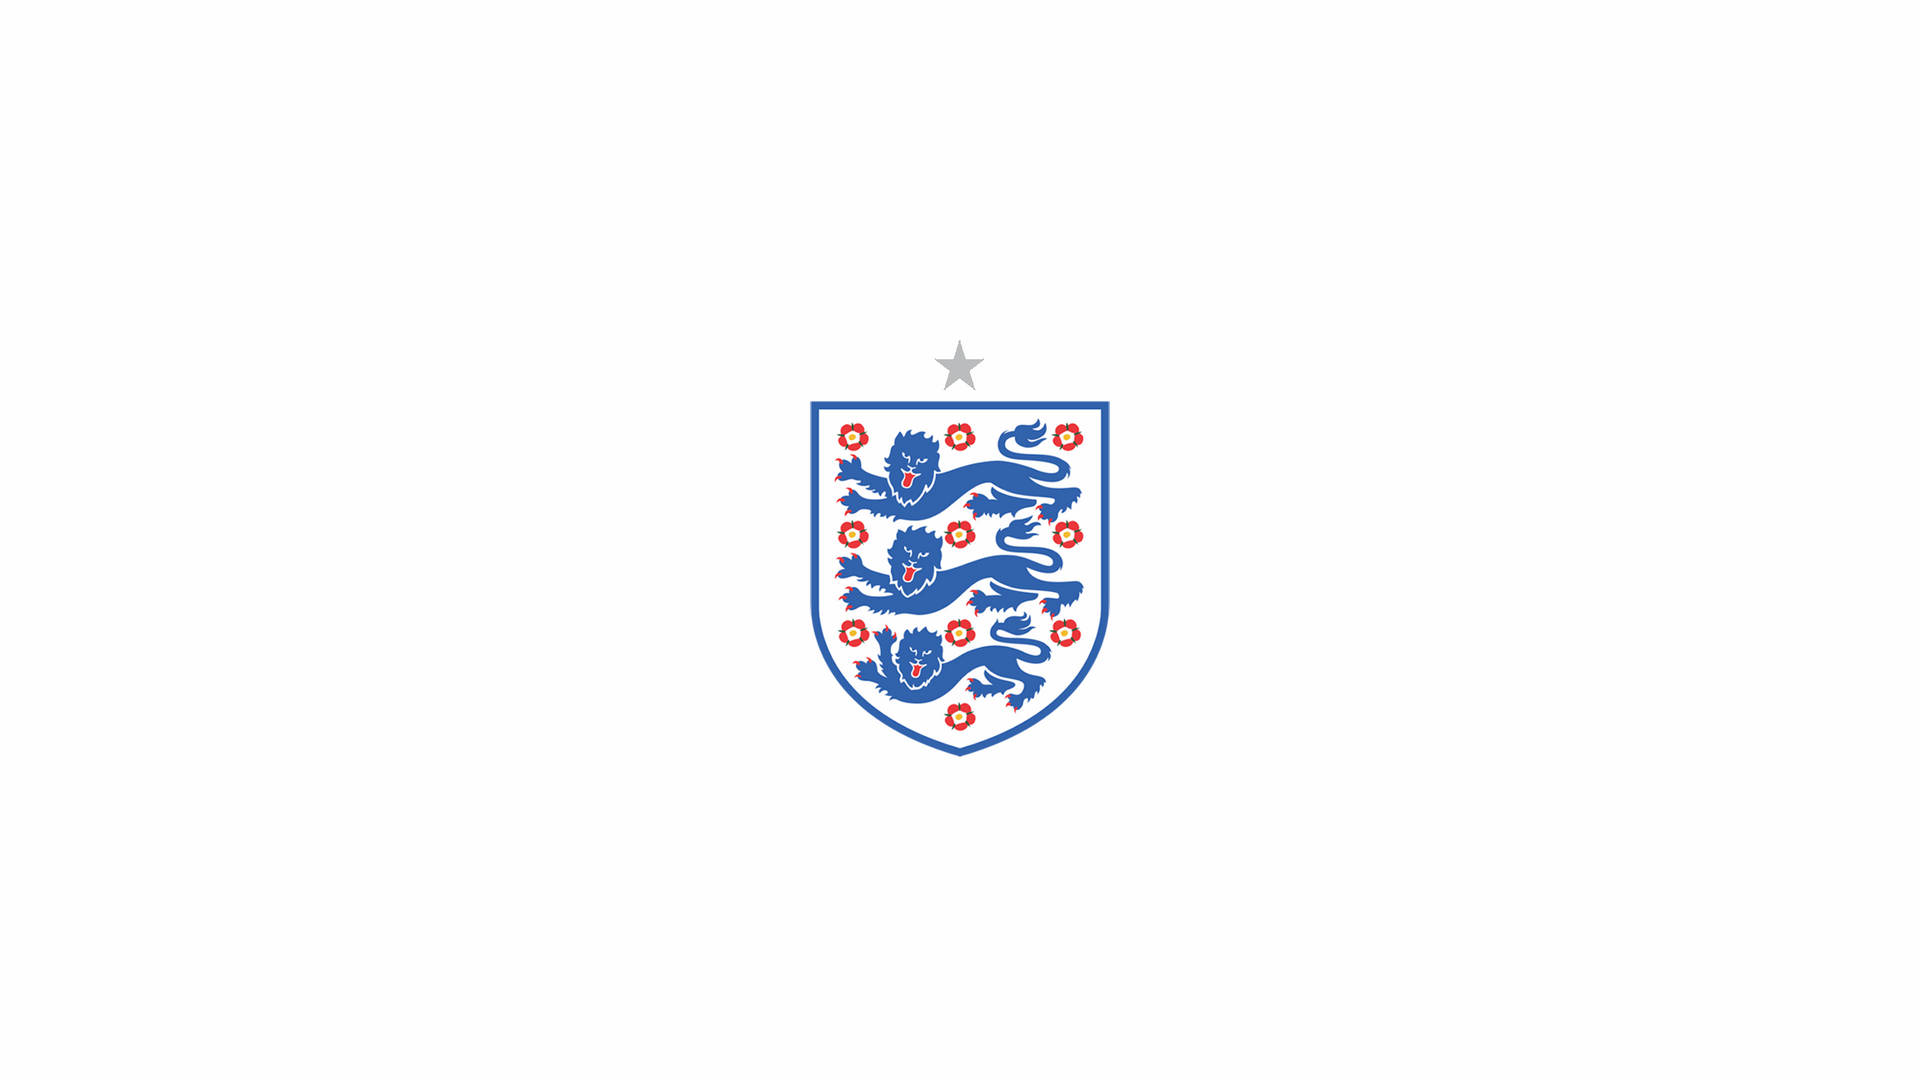 England National Football Team Minimalist Flag